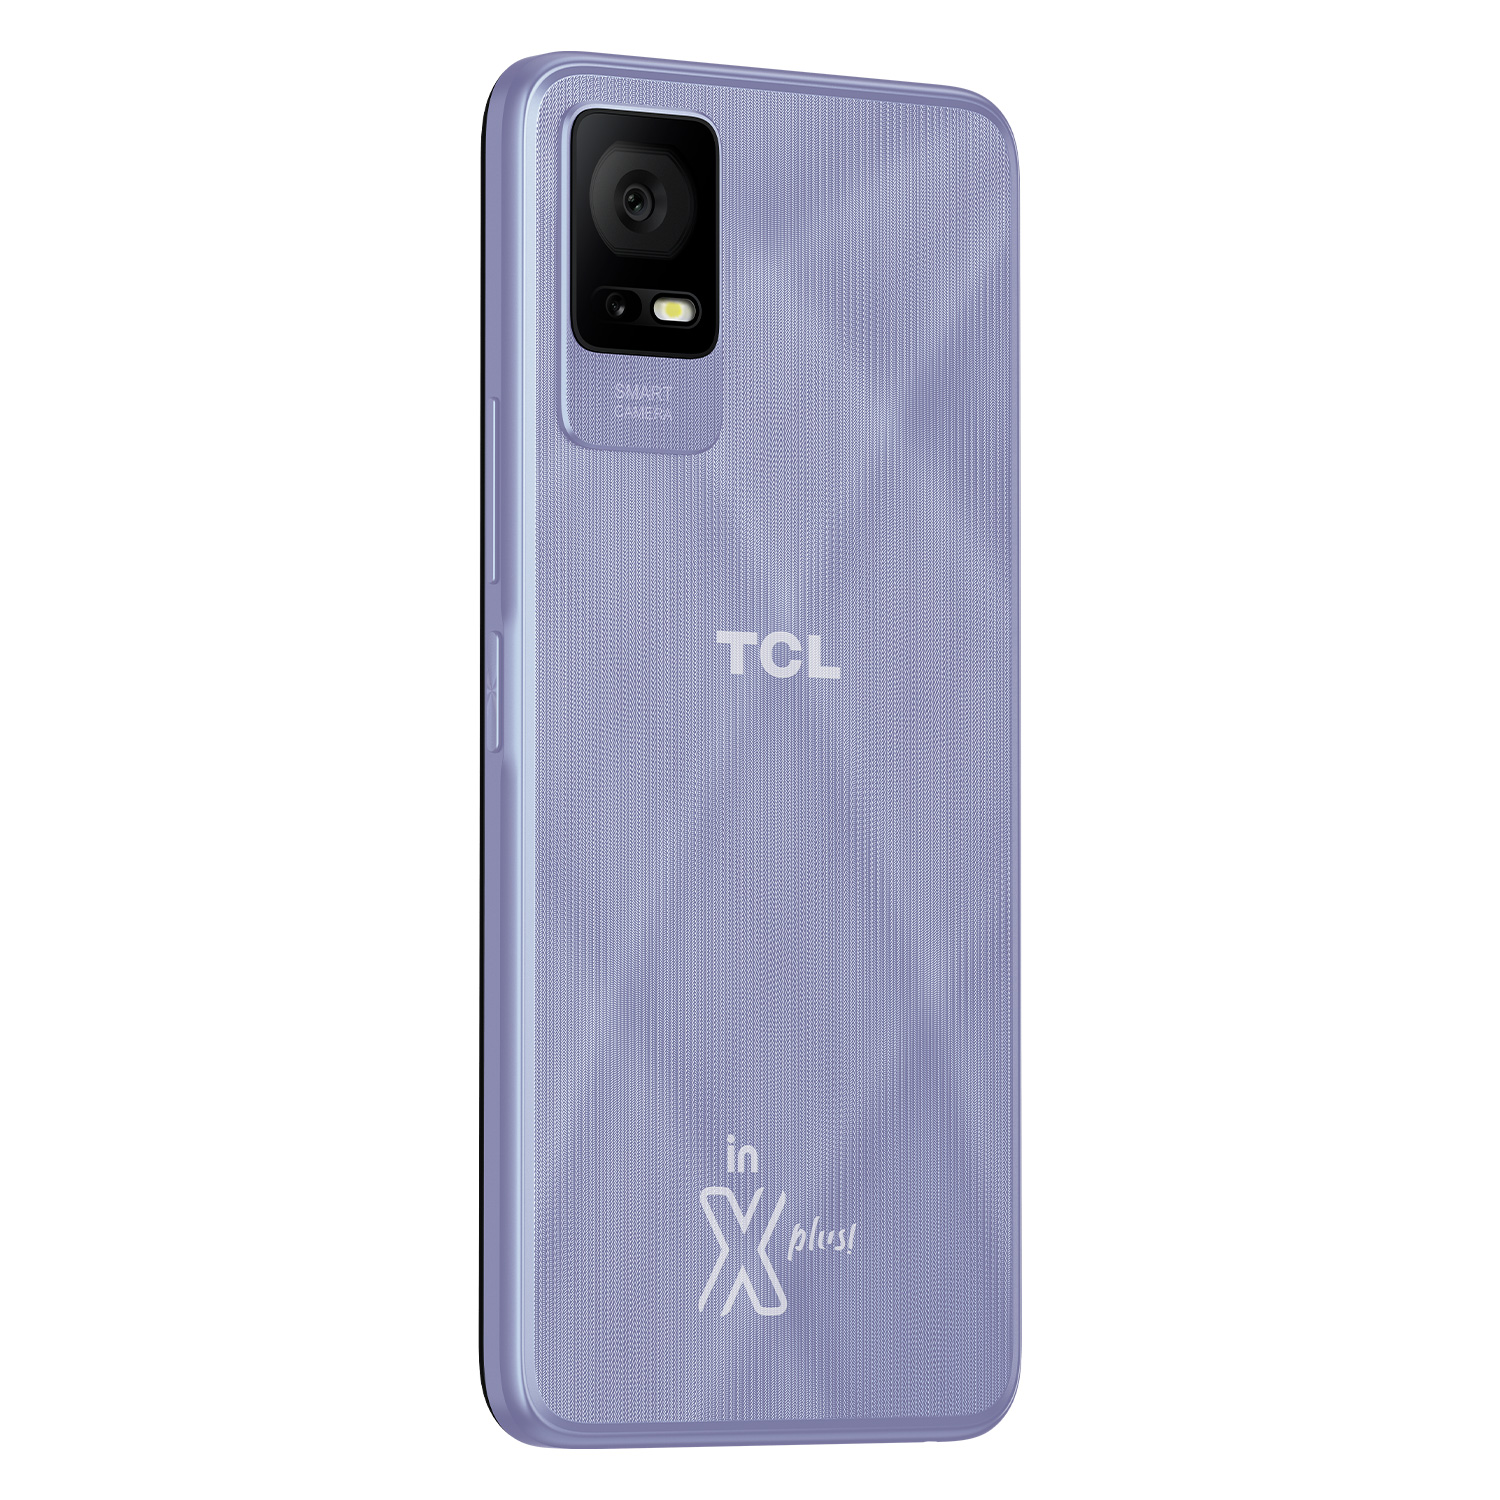 Smartphone TCL 405 Global 64GB 2GB RAM Dual SIM Tela 6.6" - Lavanda